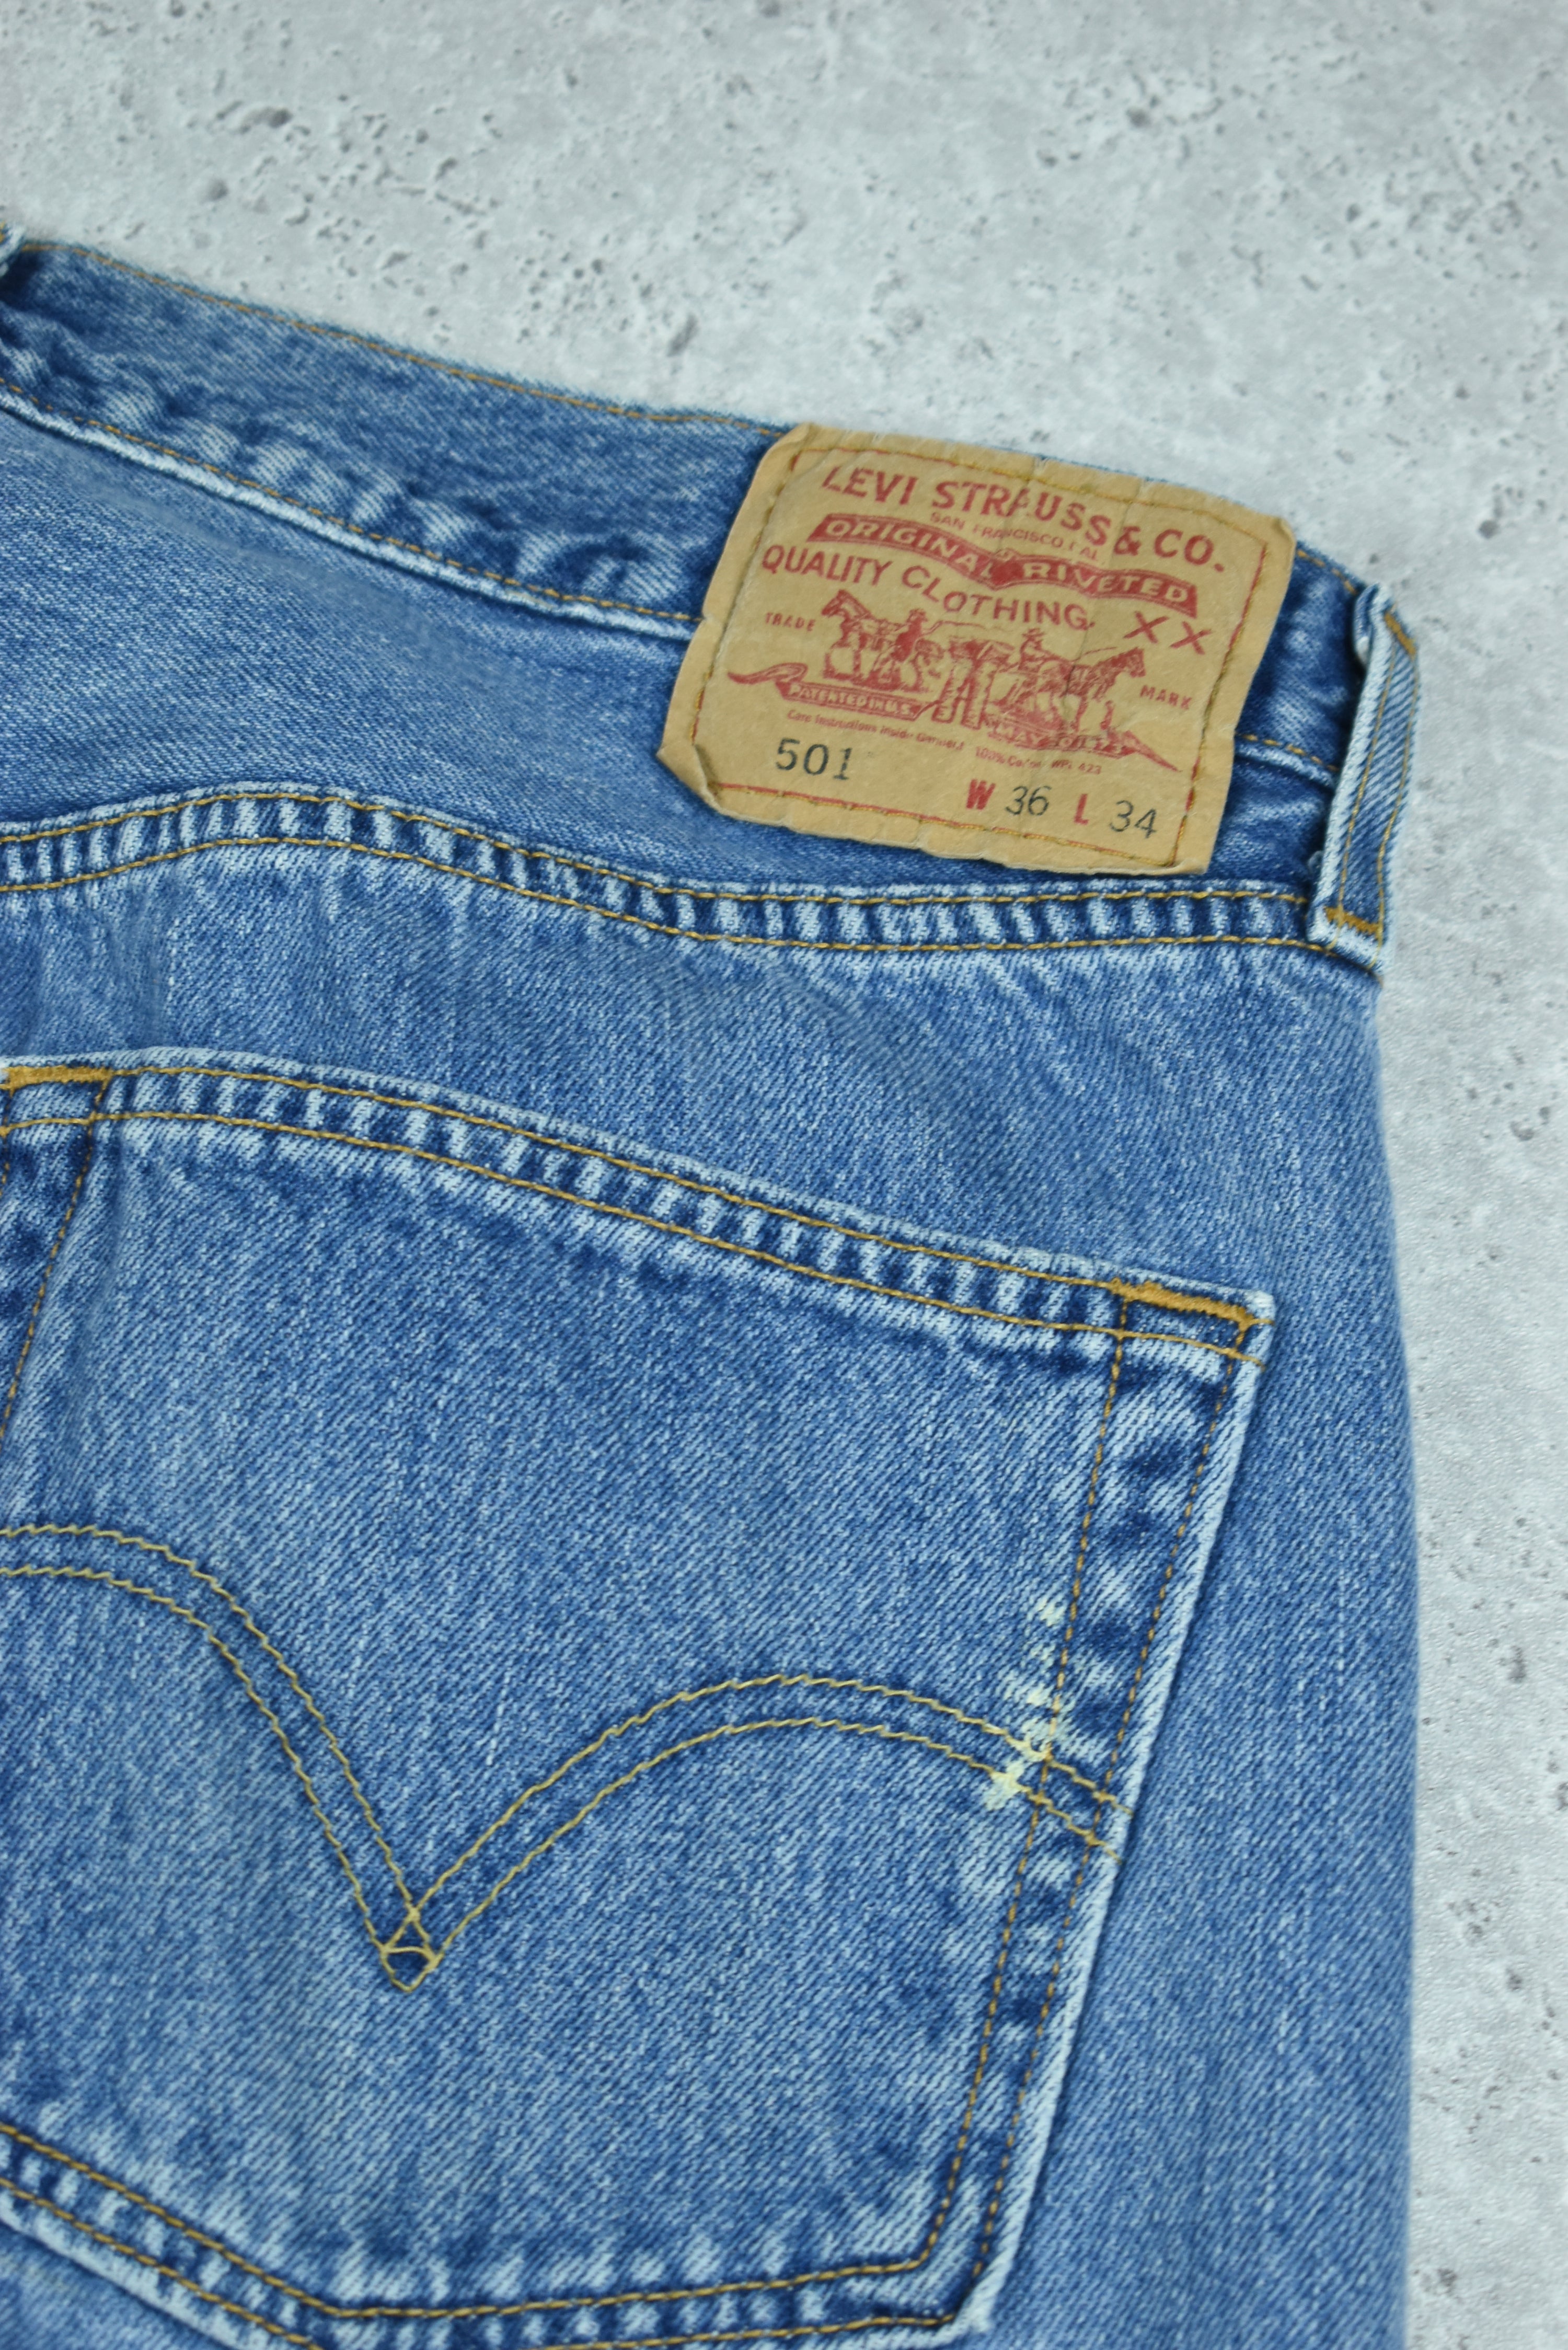 Vintage Levis 501 Denim Jeans 36x34